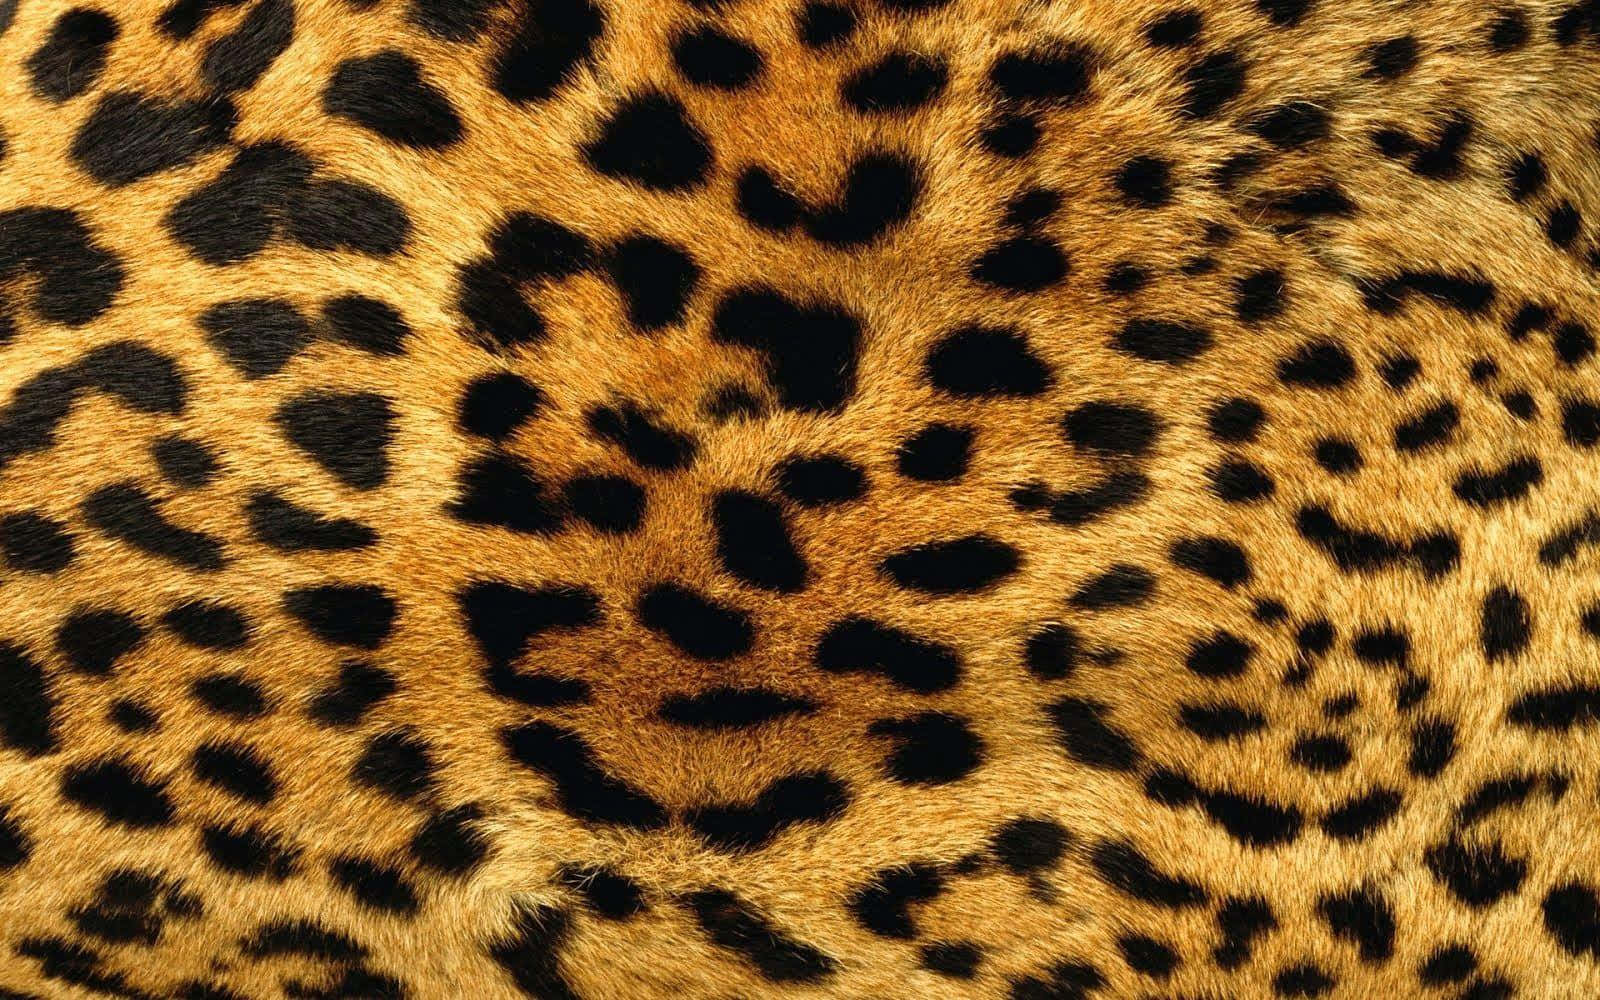 Leopardenfelltextur - Lizenzfreies Foto